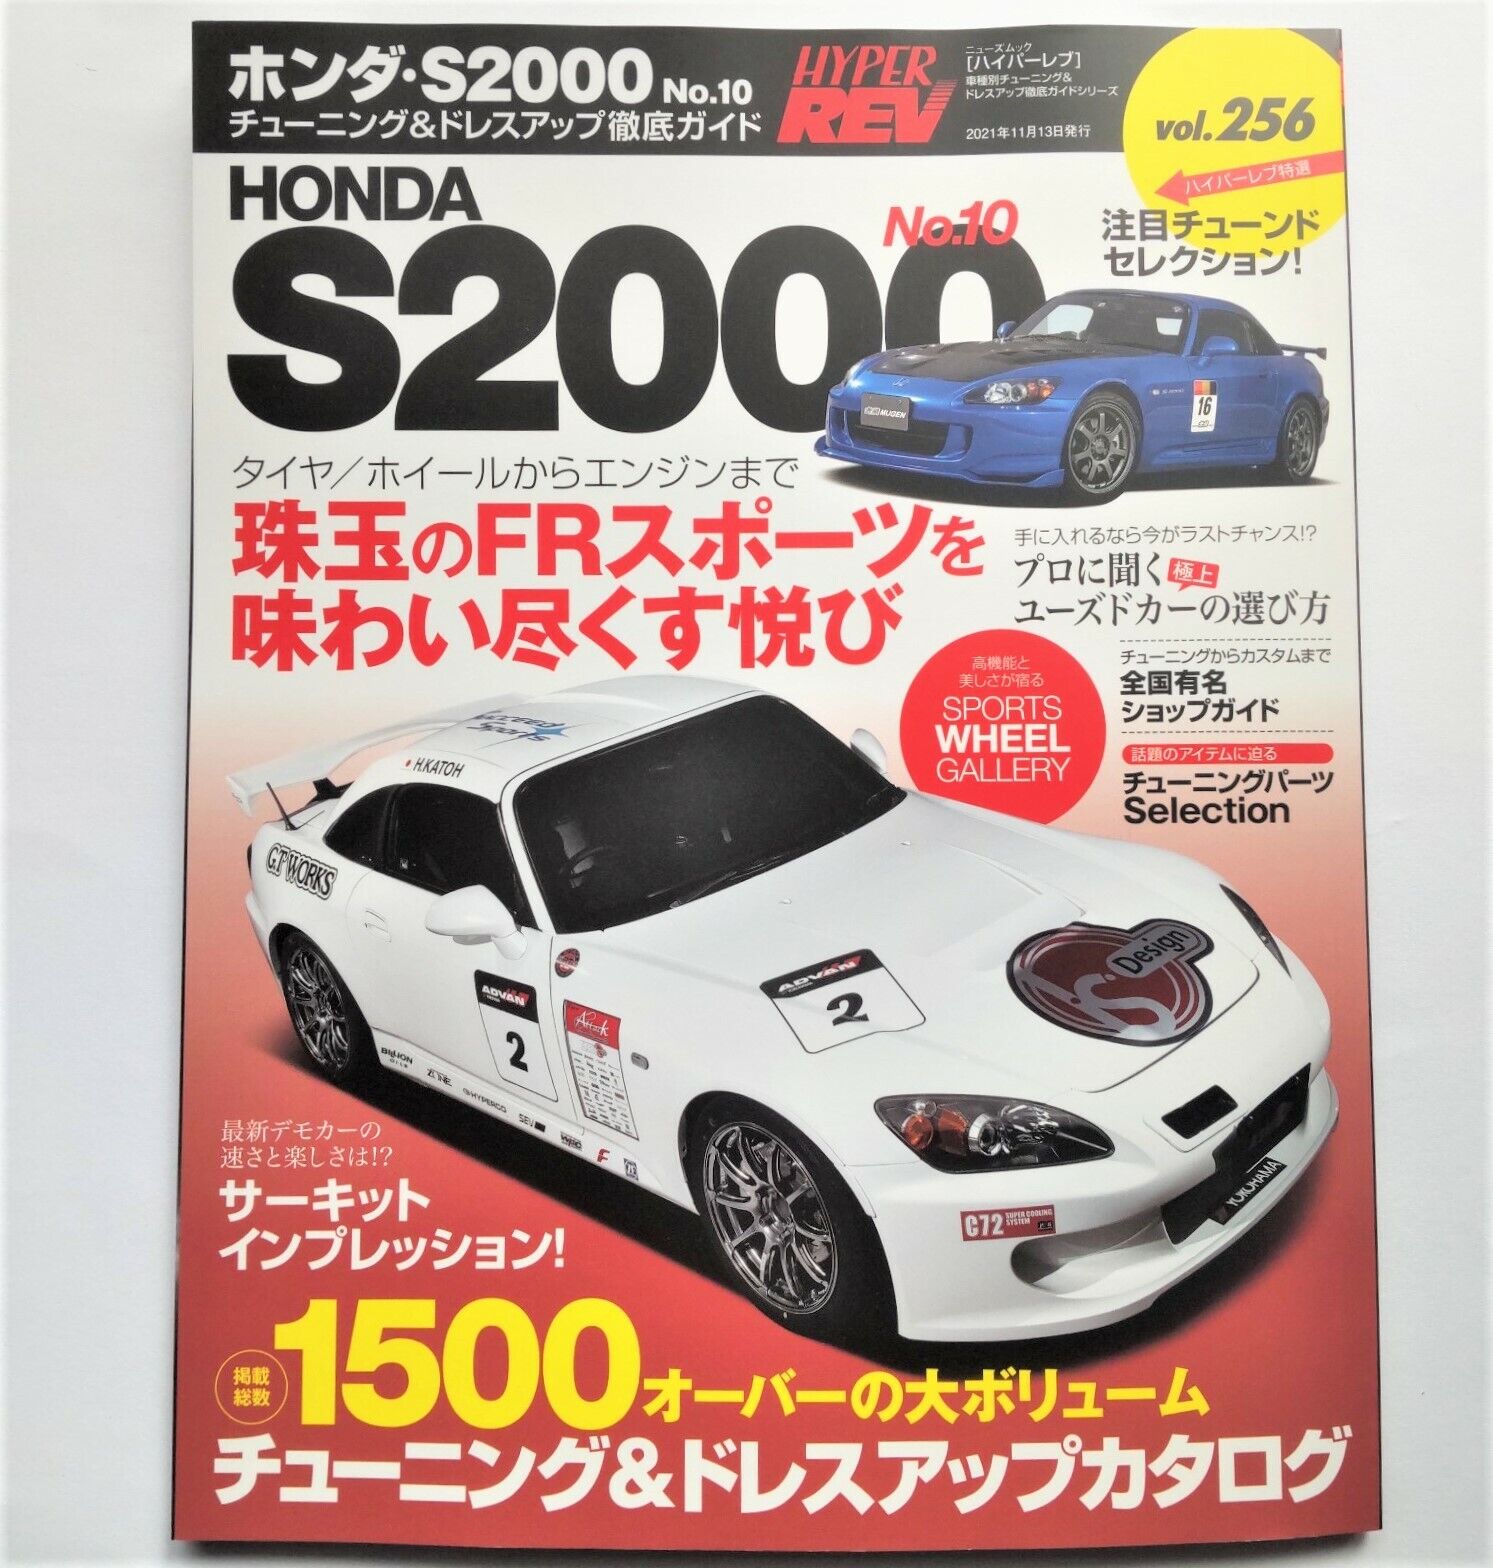 קנו איביי HYPER REV Vol.256 HONDA S2000 Tuning  Dress-up MUGEN Japanese  Car Magazine